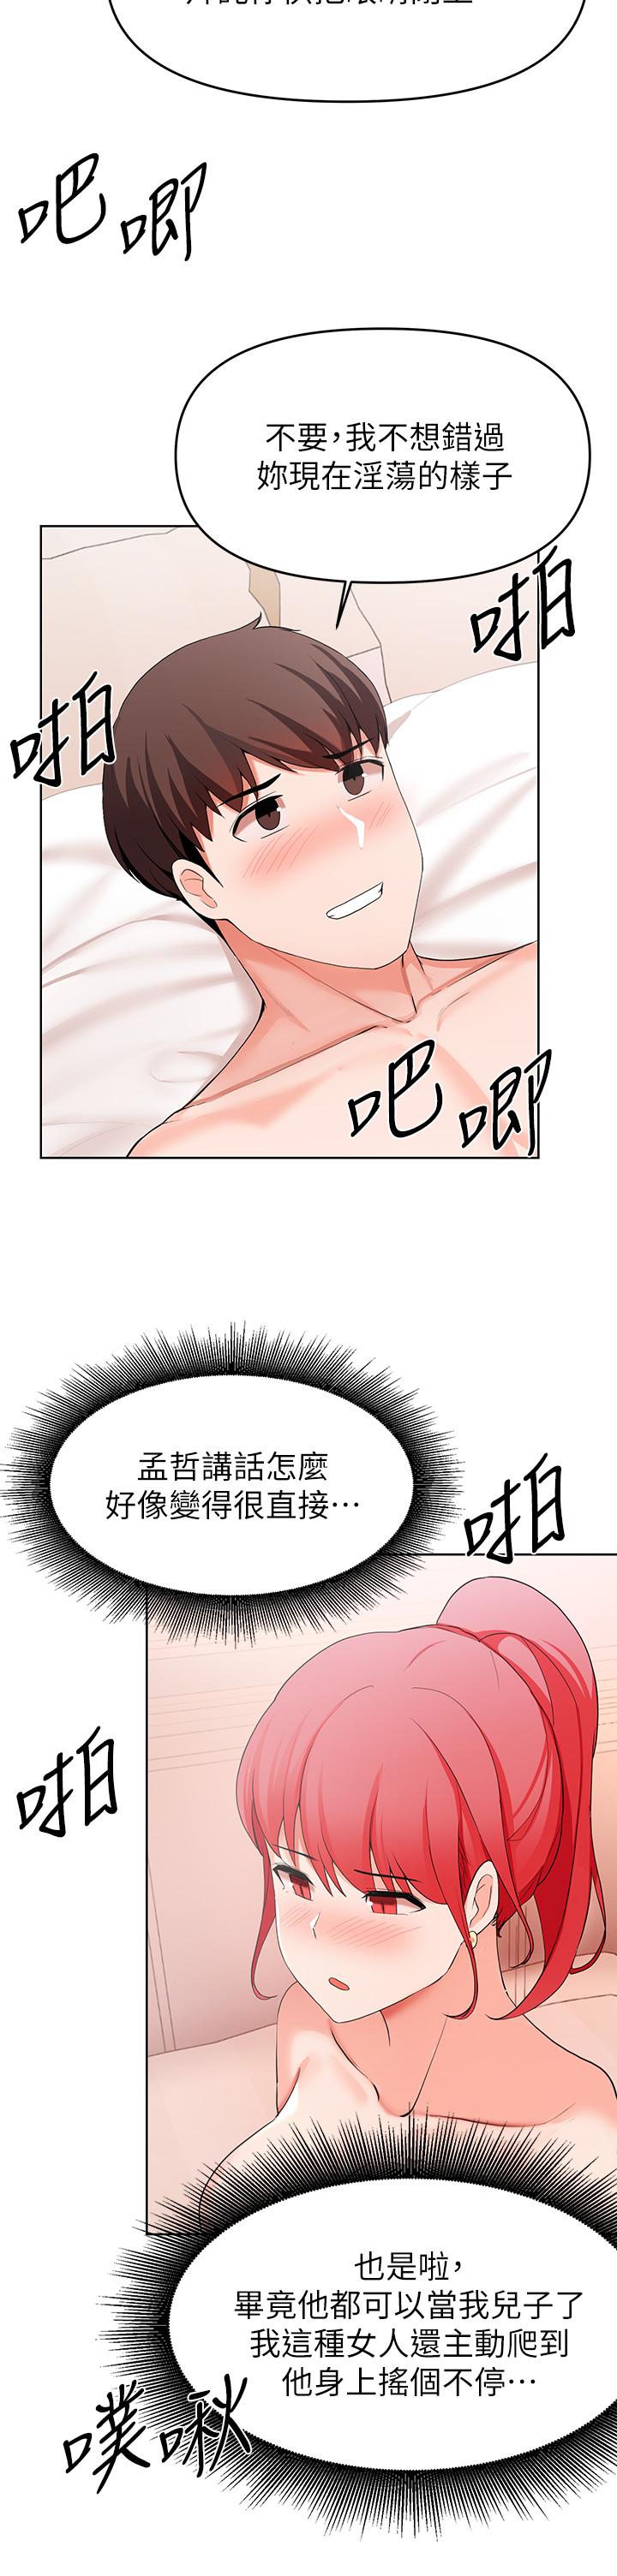 《废柴逃脱》漫画 第27话-禁忌的关係曝光了